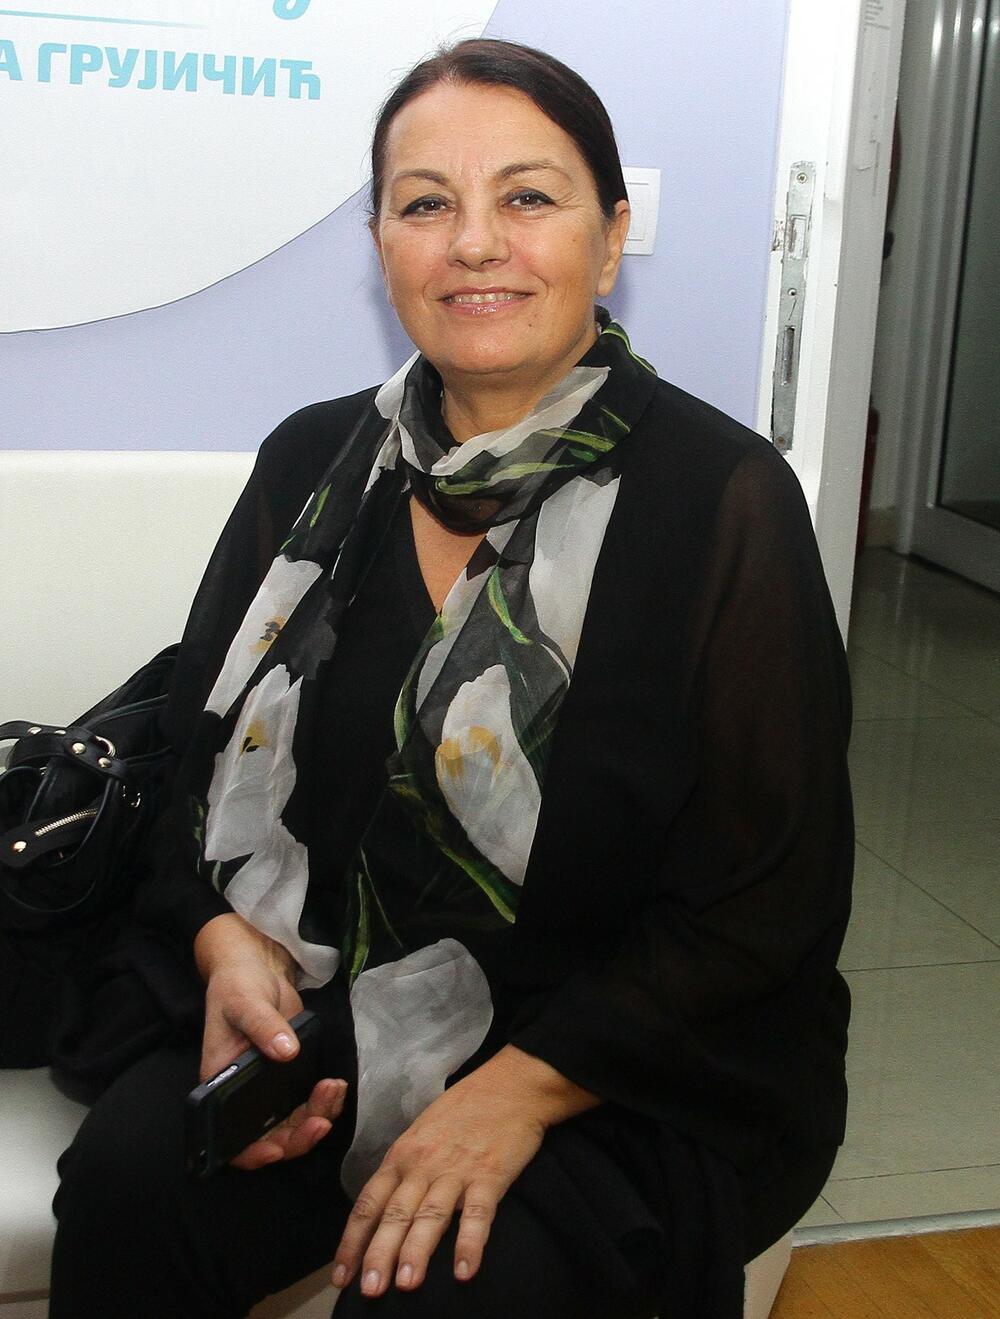 Ljiljana Blagojević se proslavila brojnim ulogama u serijama i filmovima 